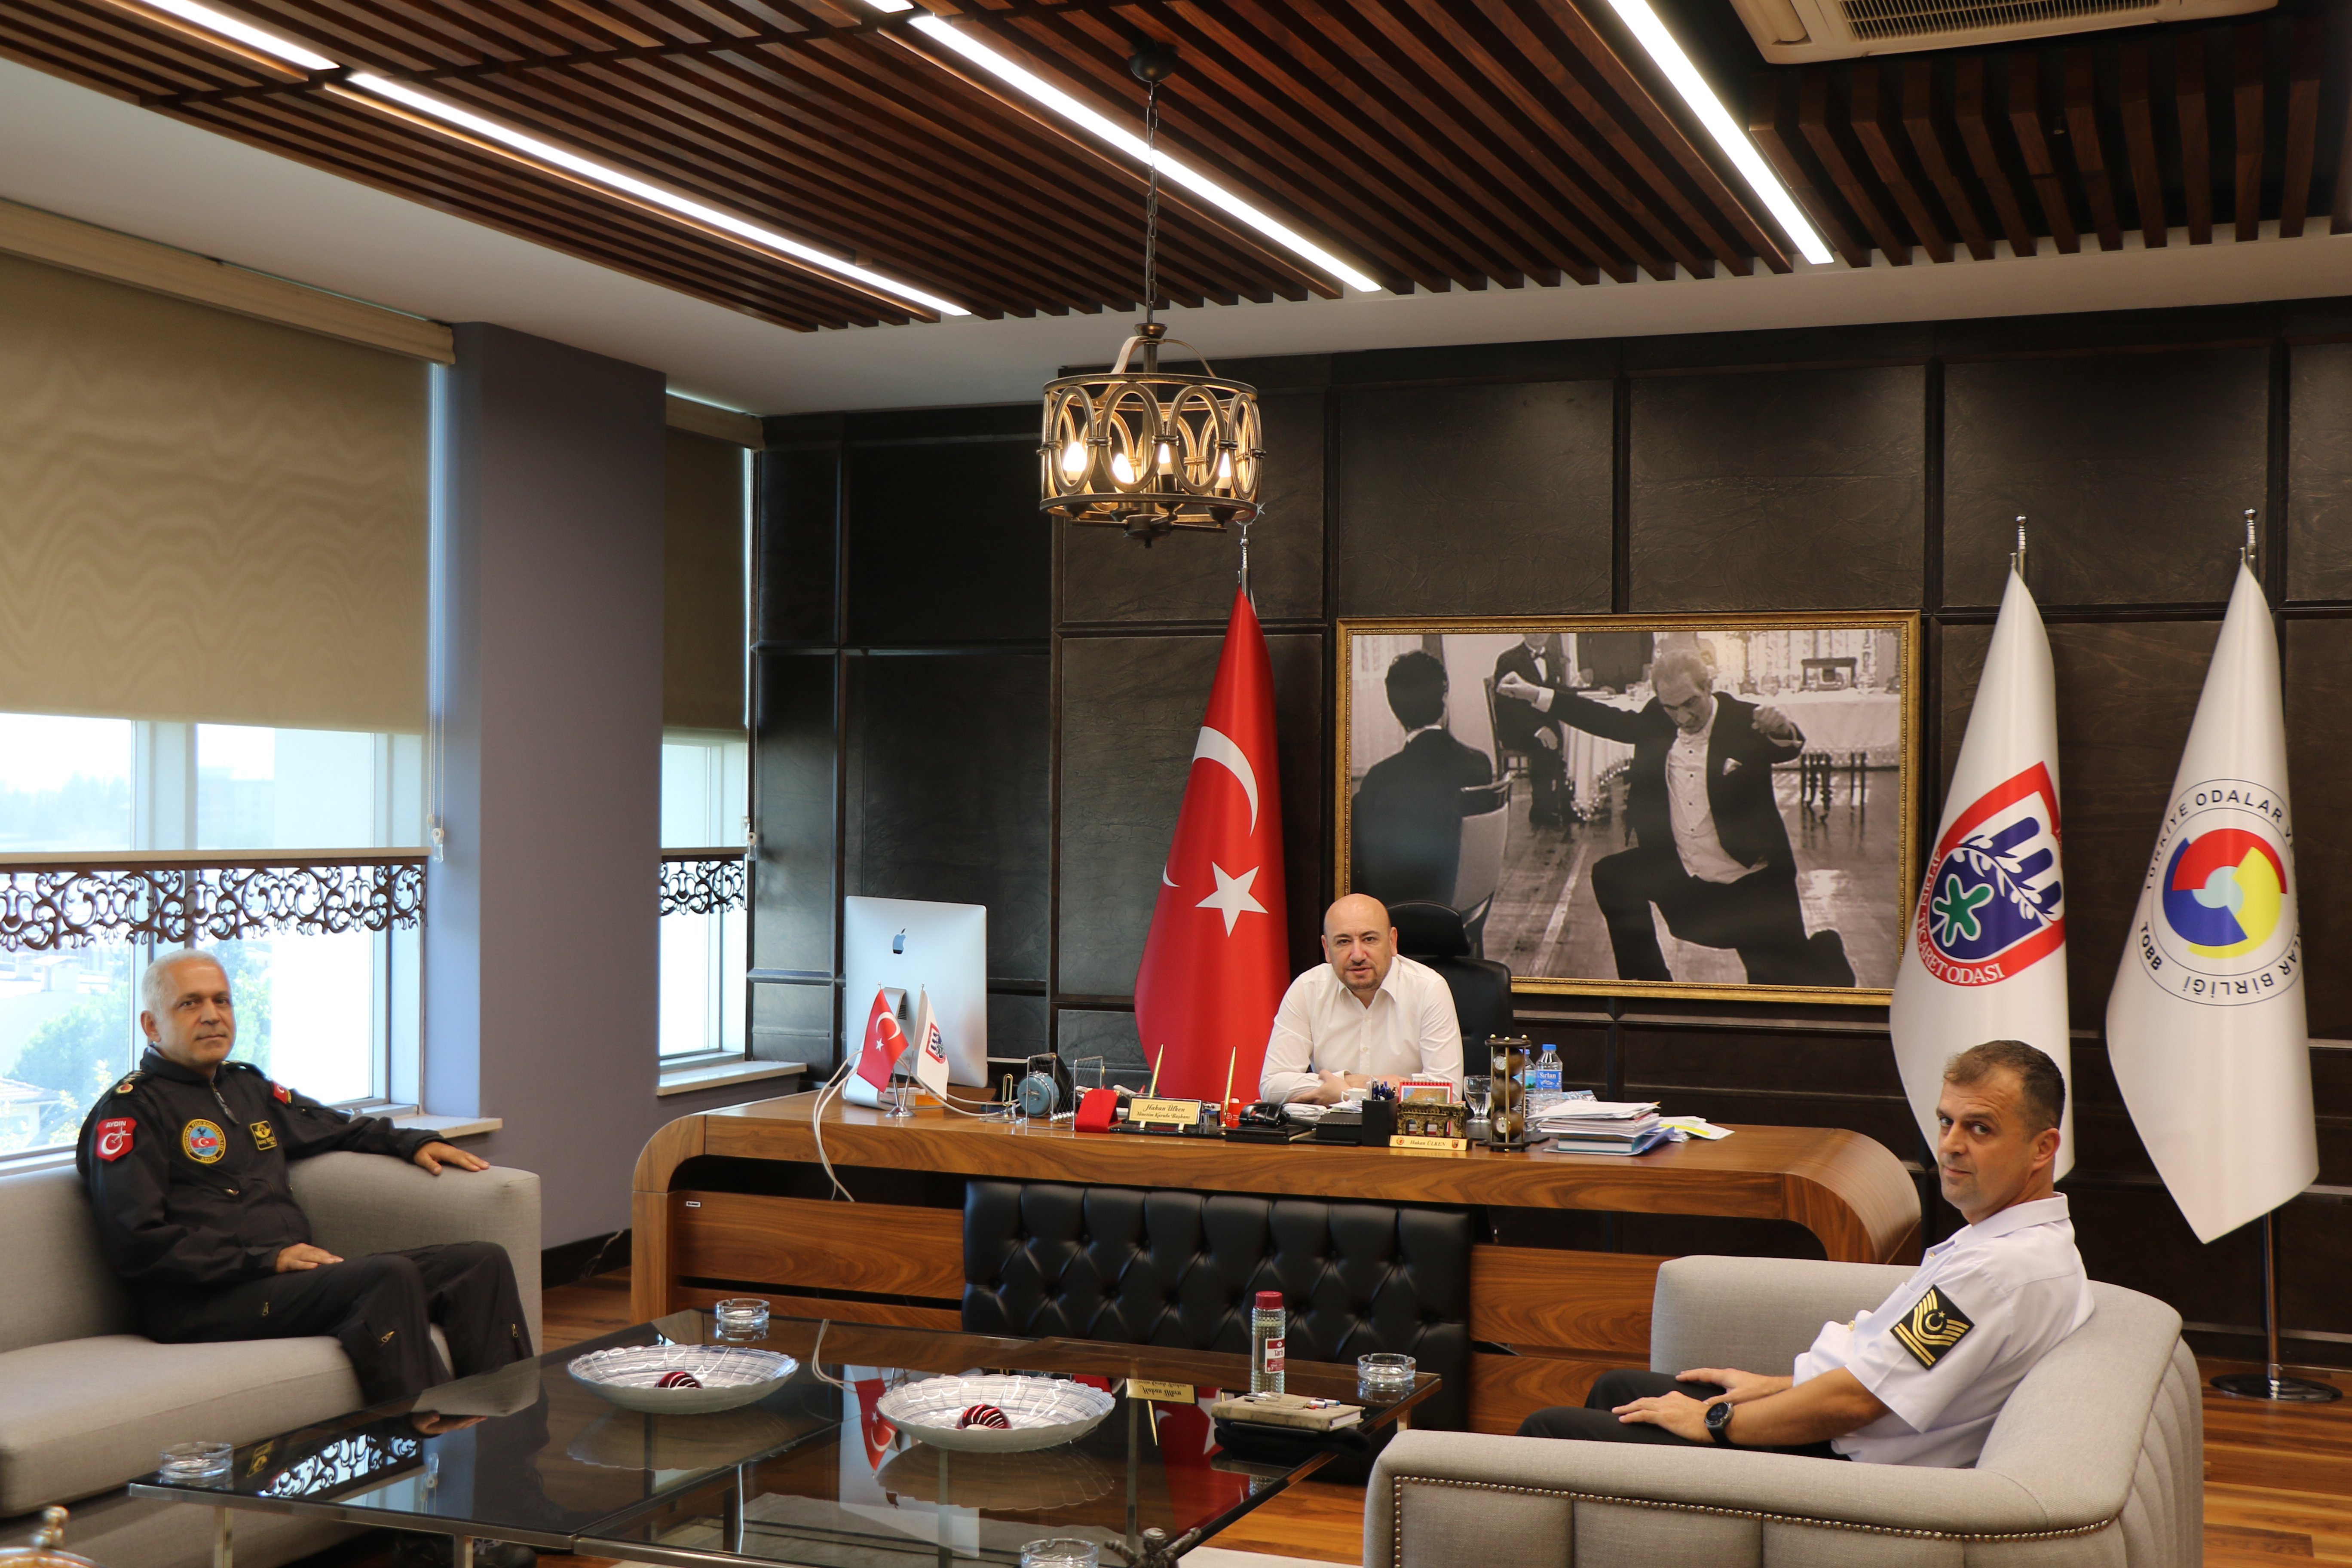 Aydın Jandarma Filo Komutanı J. Plt. Kd. Albay Koray ERGİN, TOBB Yönetim Kurulu Üyesi ve Odamız Başkanı Hakan ÜLKEN’i makamında ziyaret etti.